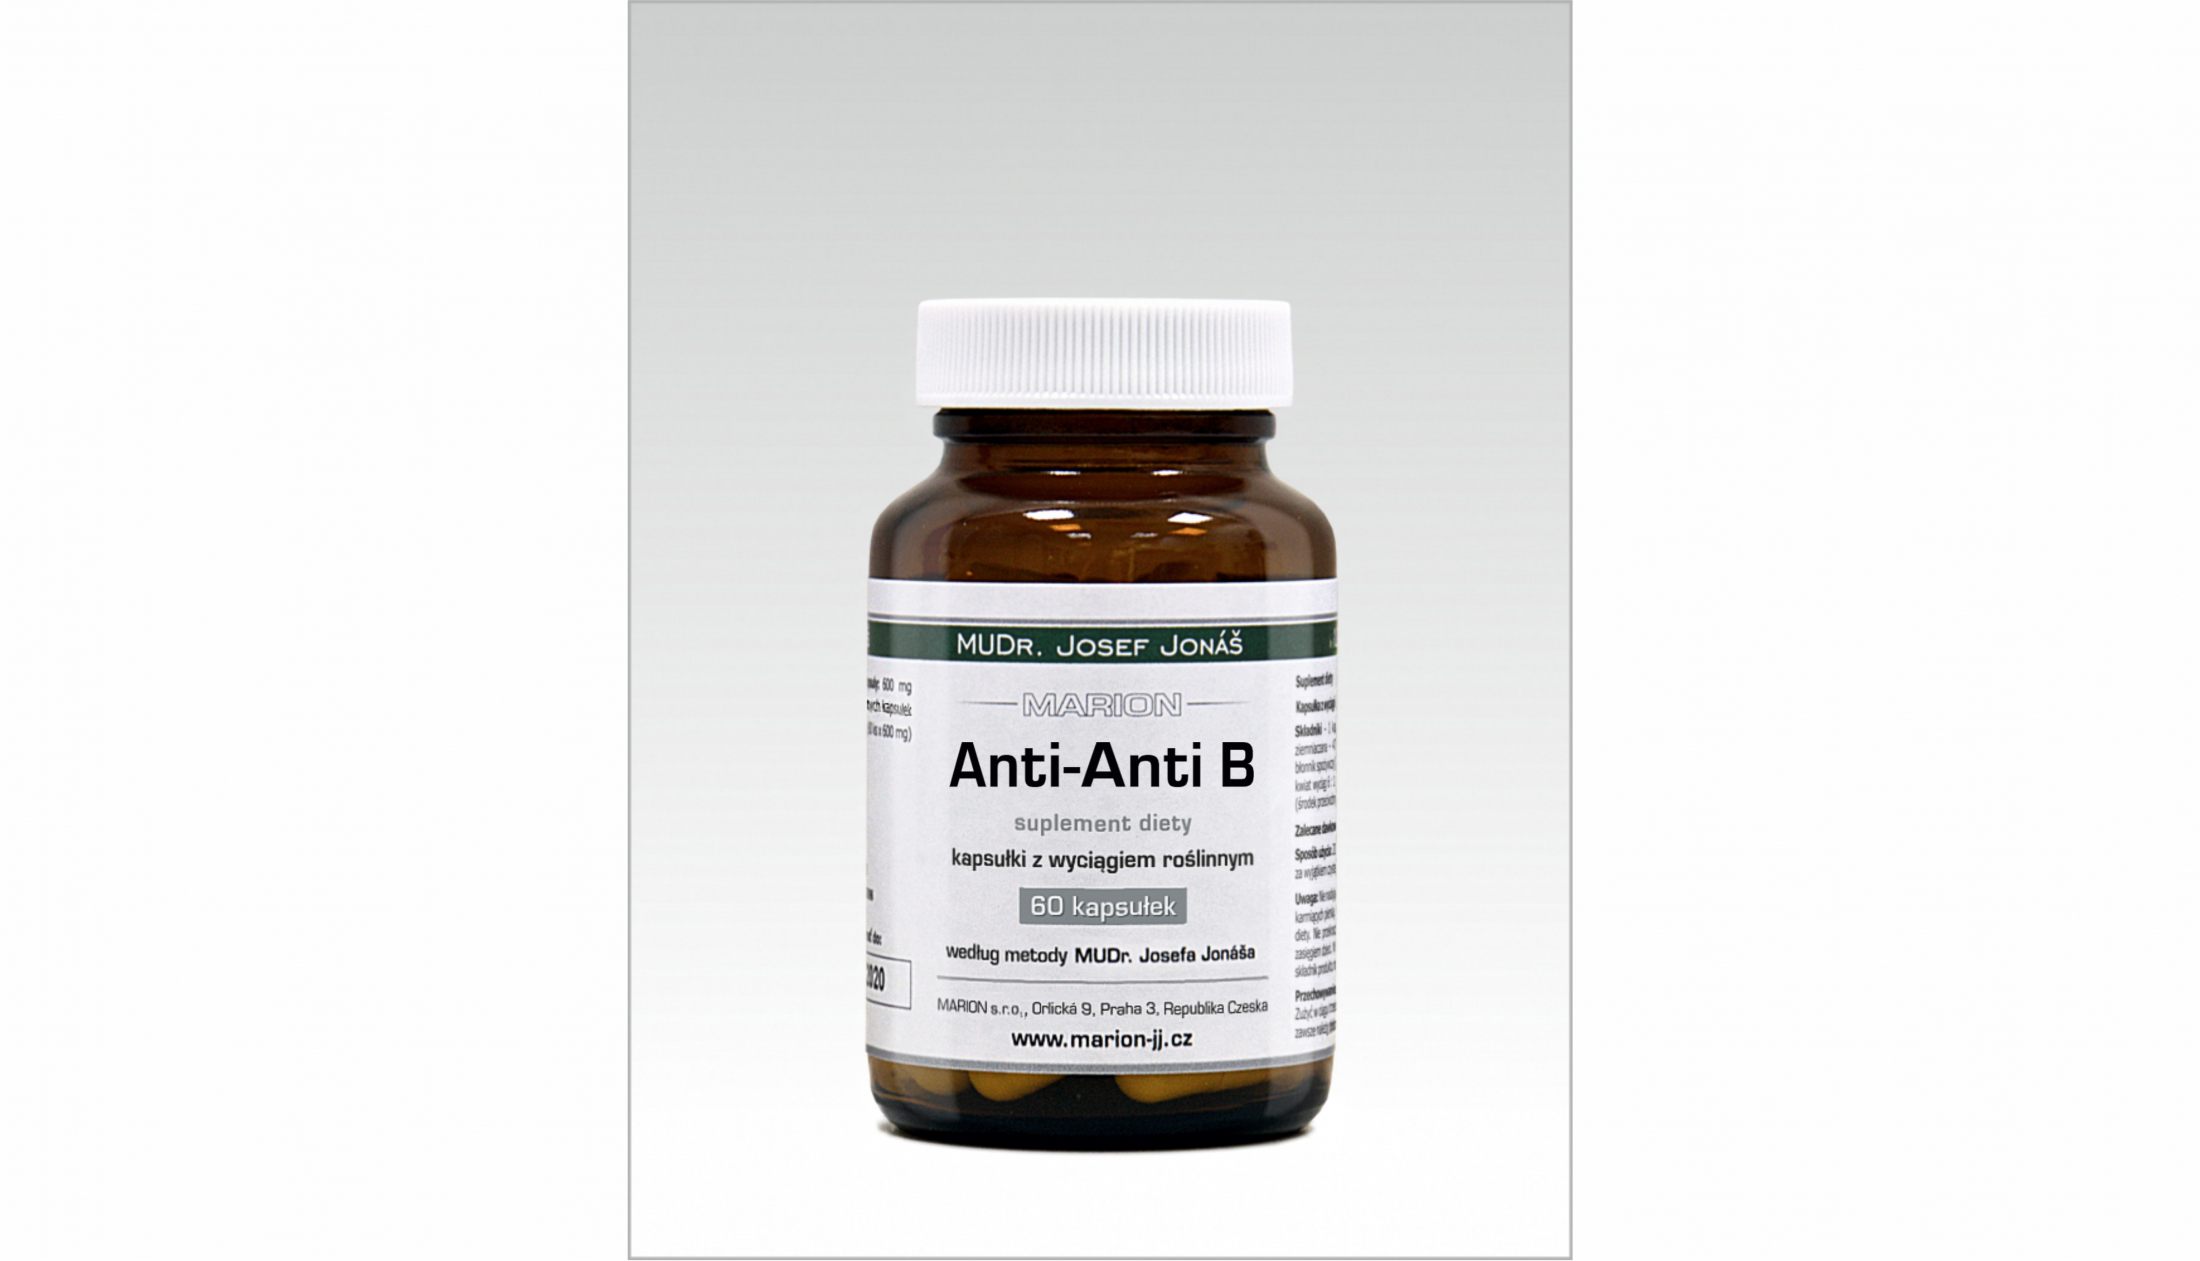 Anti-Anti B – kapsułki z wyciągiem roślinnym